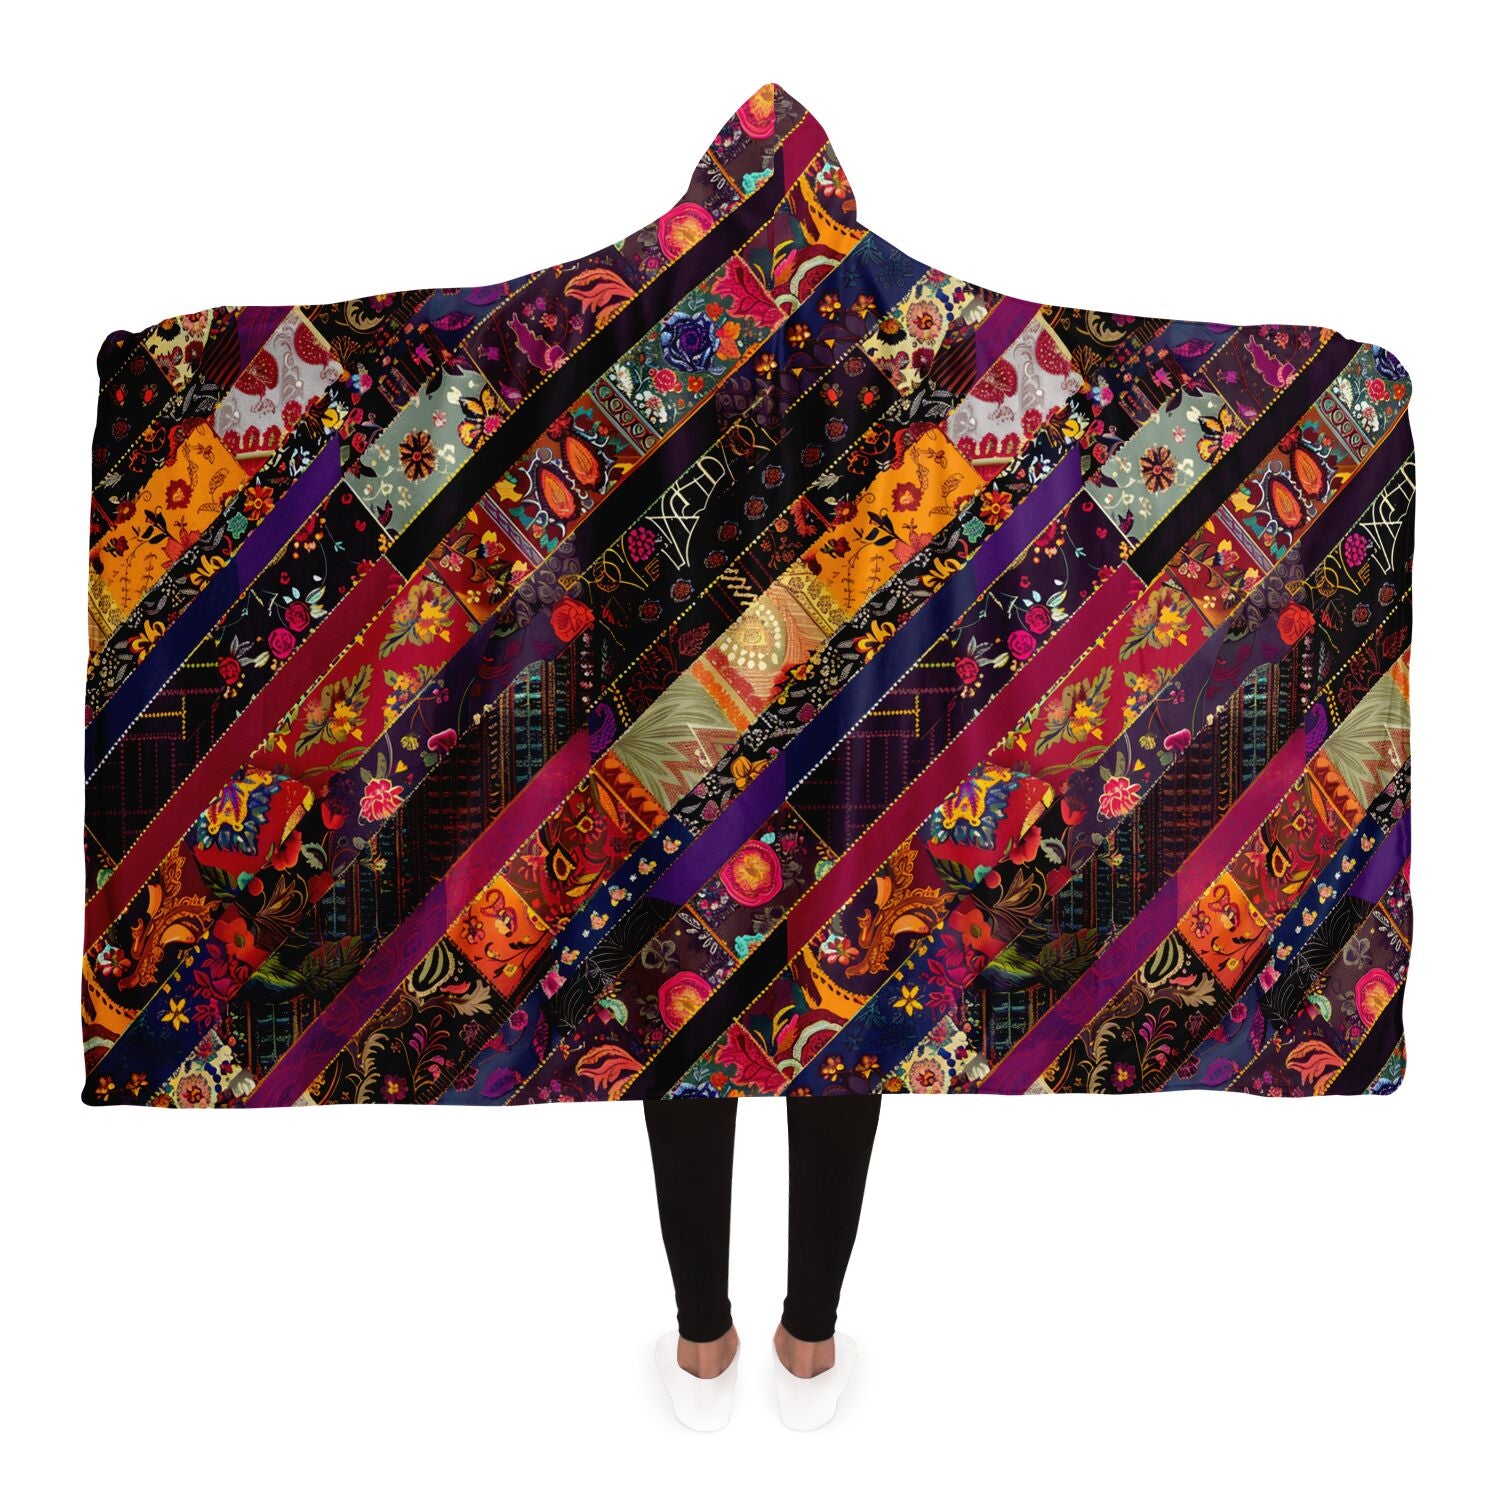 Boho patchwork print hoodie blanket